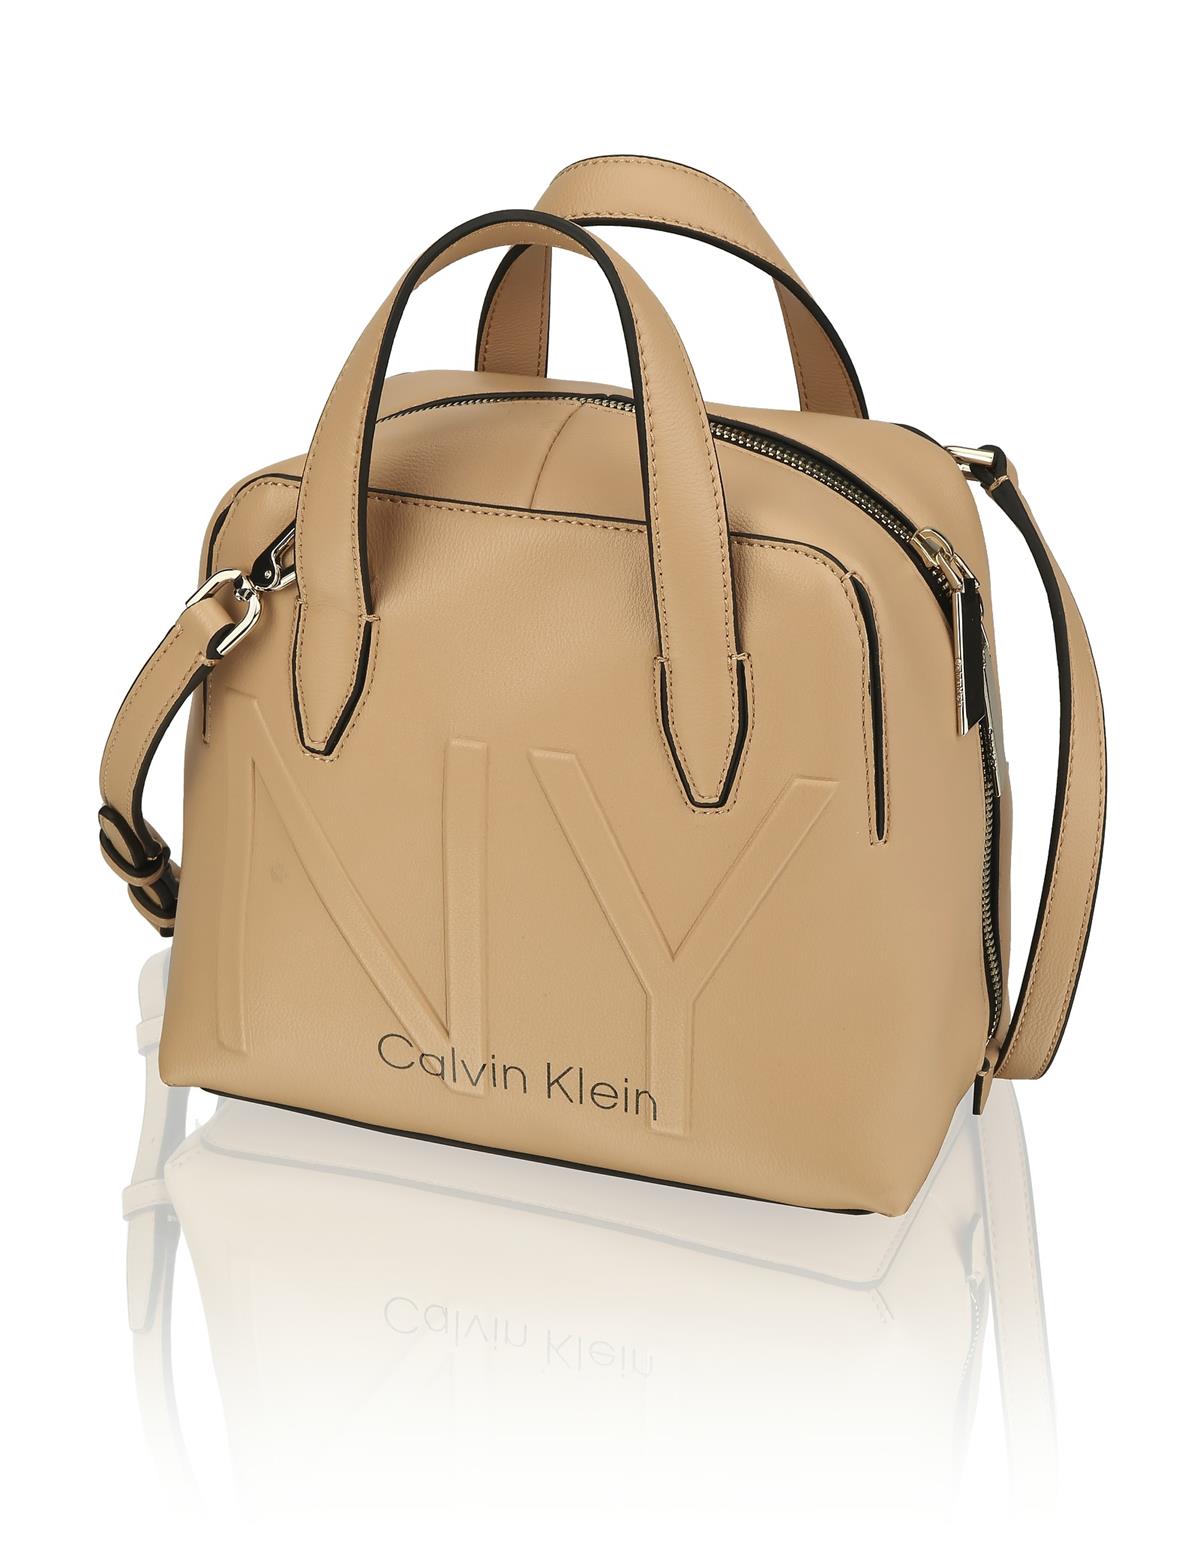 HUMANIC 89 Calvin Klein Shaped Duffle Bag EUR 130 6131001696